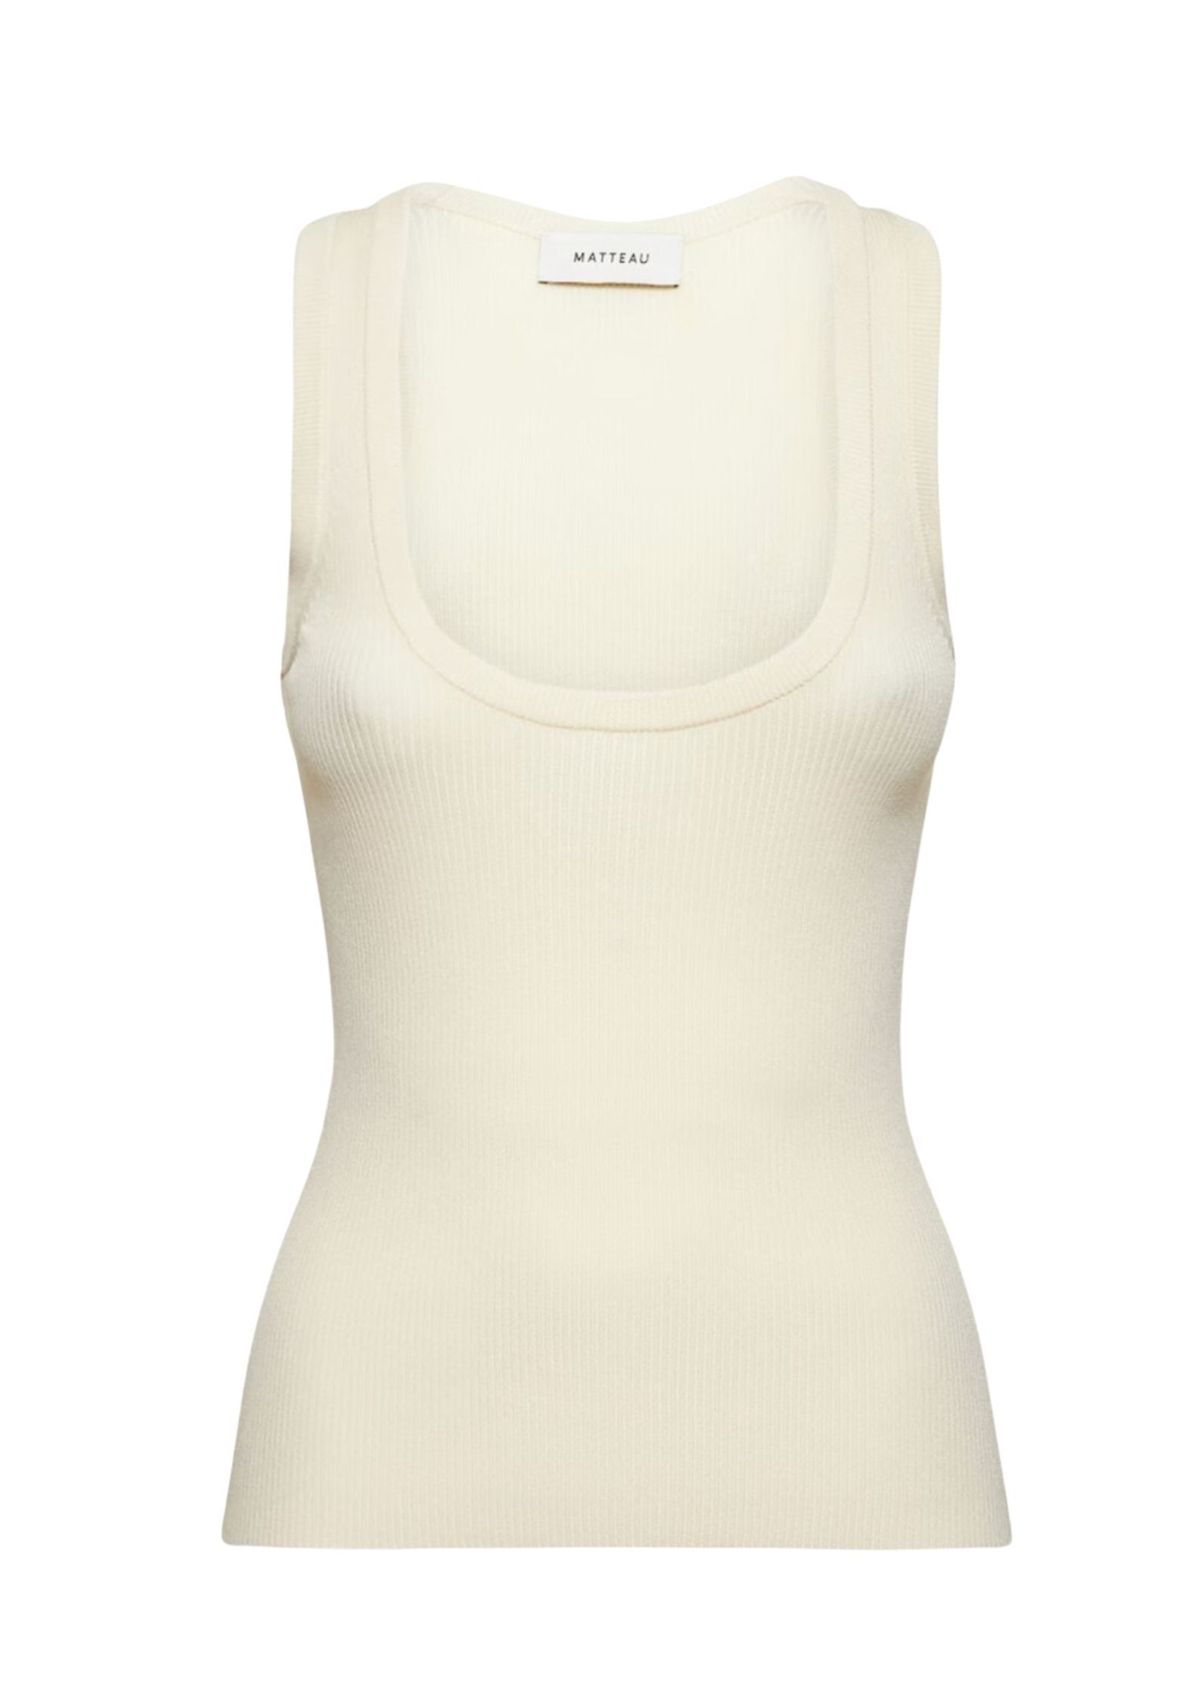 The 18 best white designer tank tops to buy now from Prada, Bottega ...